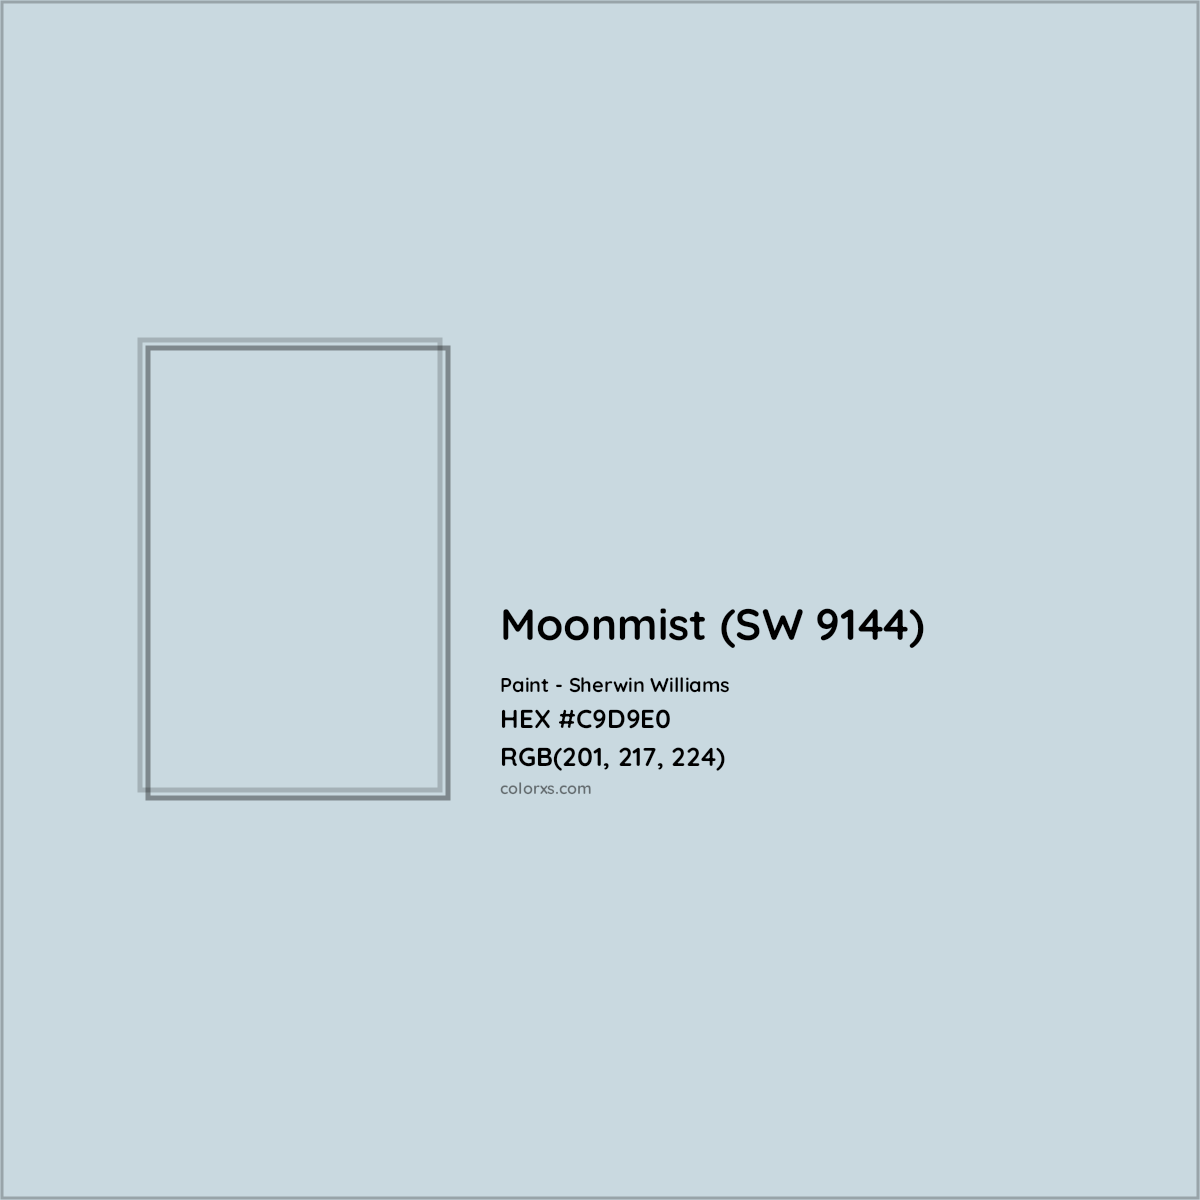 HEX #C9D9E0 Moonmist (SW 9144) Paint Sherwin Williams - Color Code